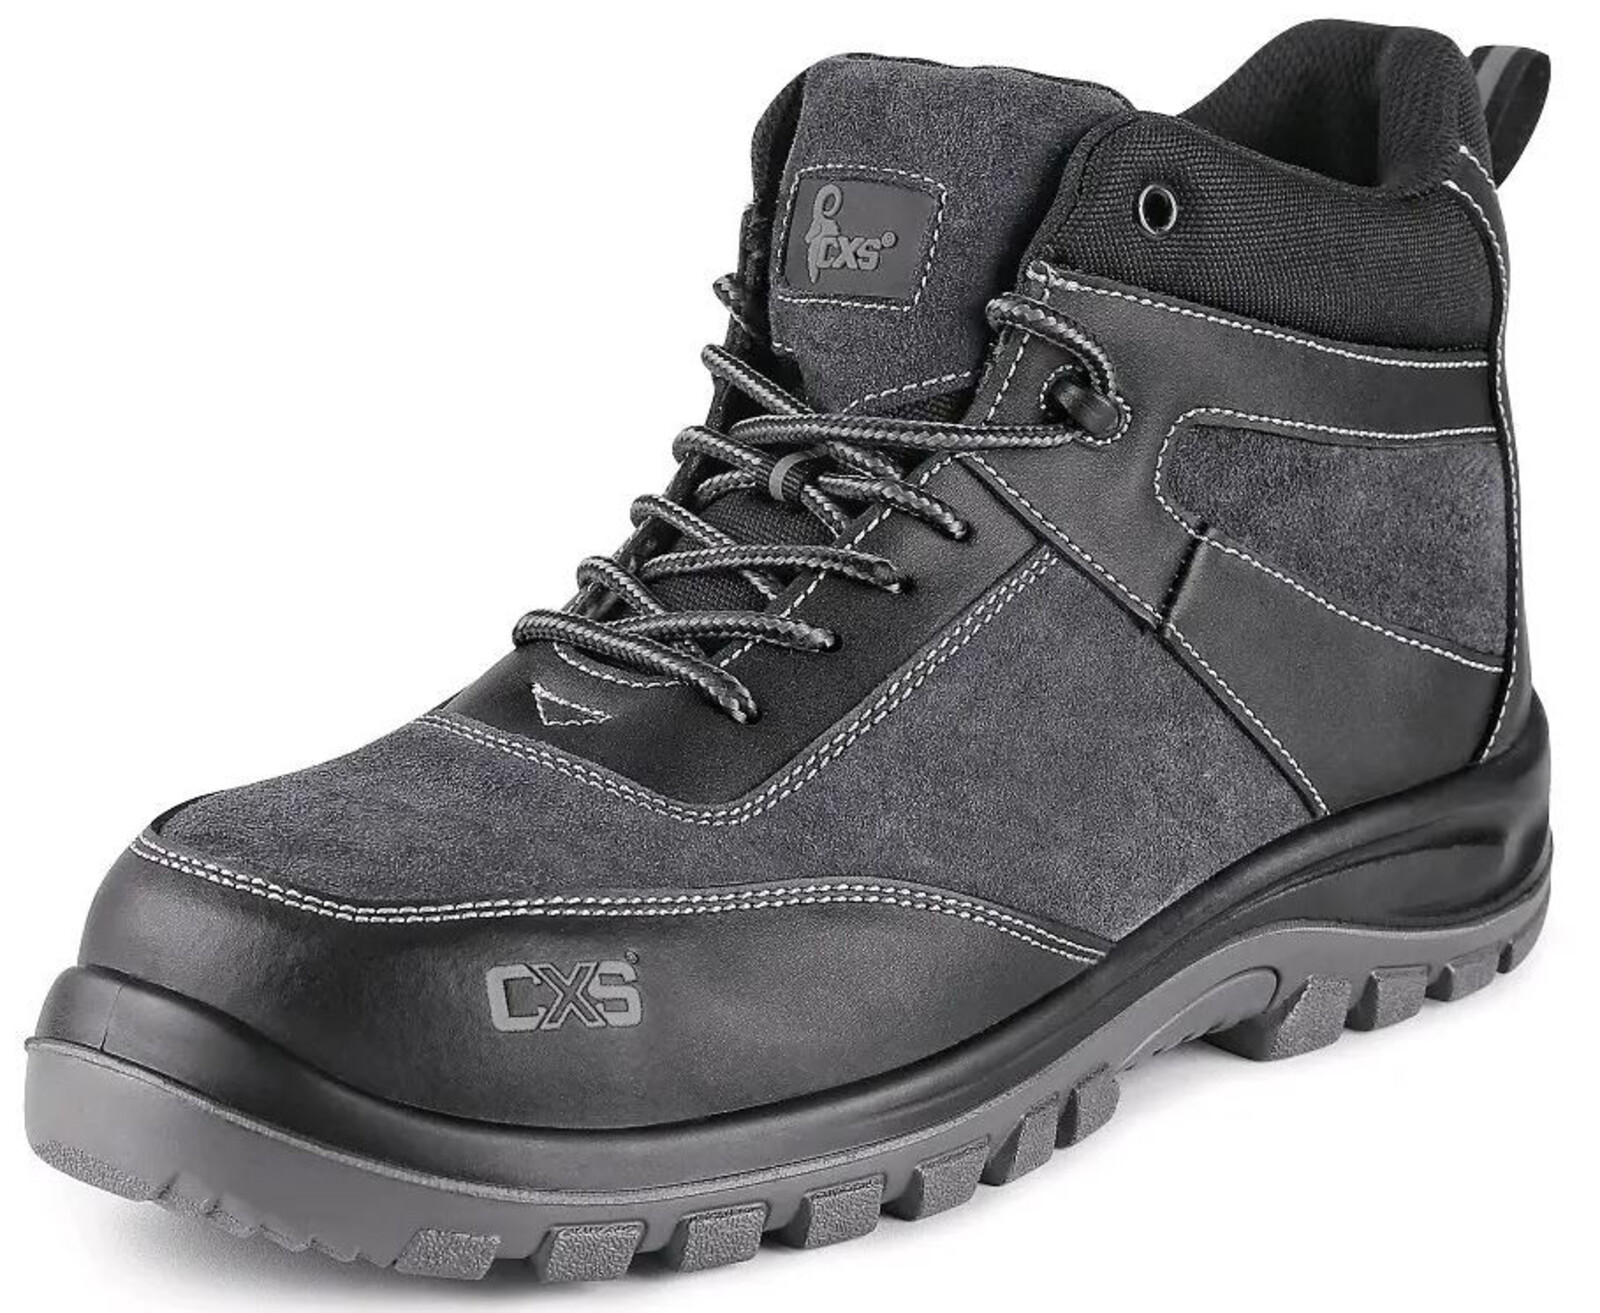 Pracovná členková obuv CXS Profit Win O1 FO SRC - veľkosť: 44, farba: čierna/sivá